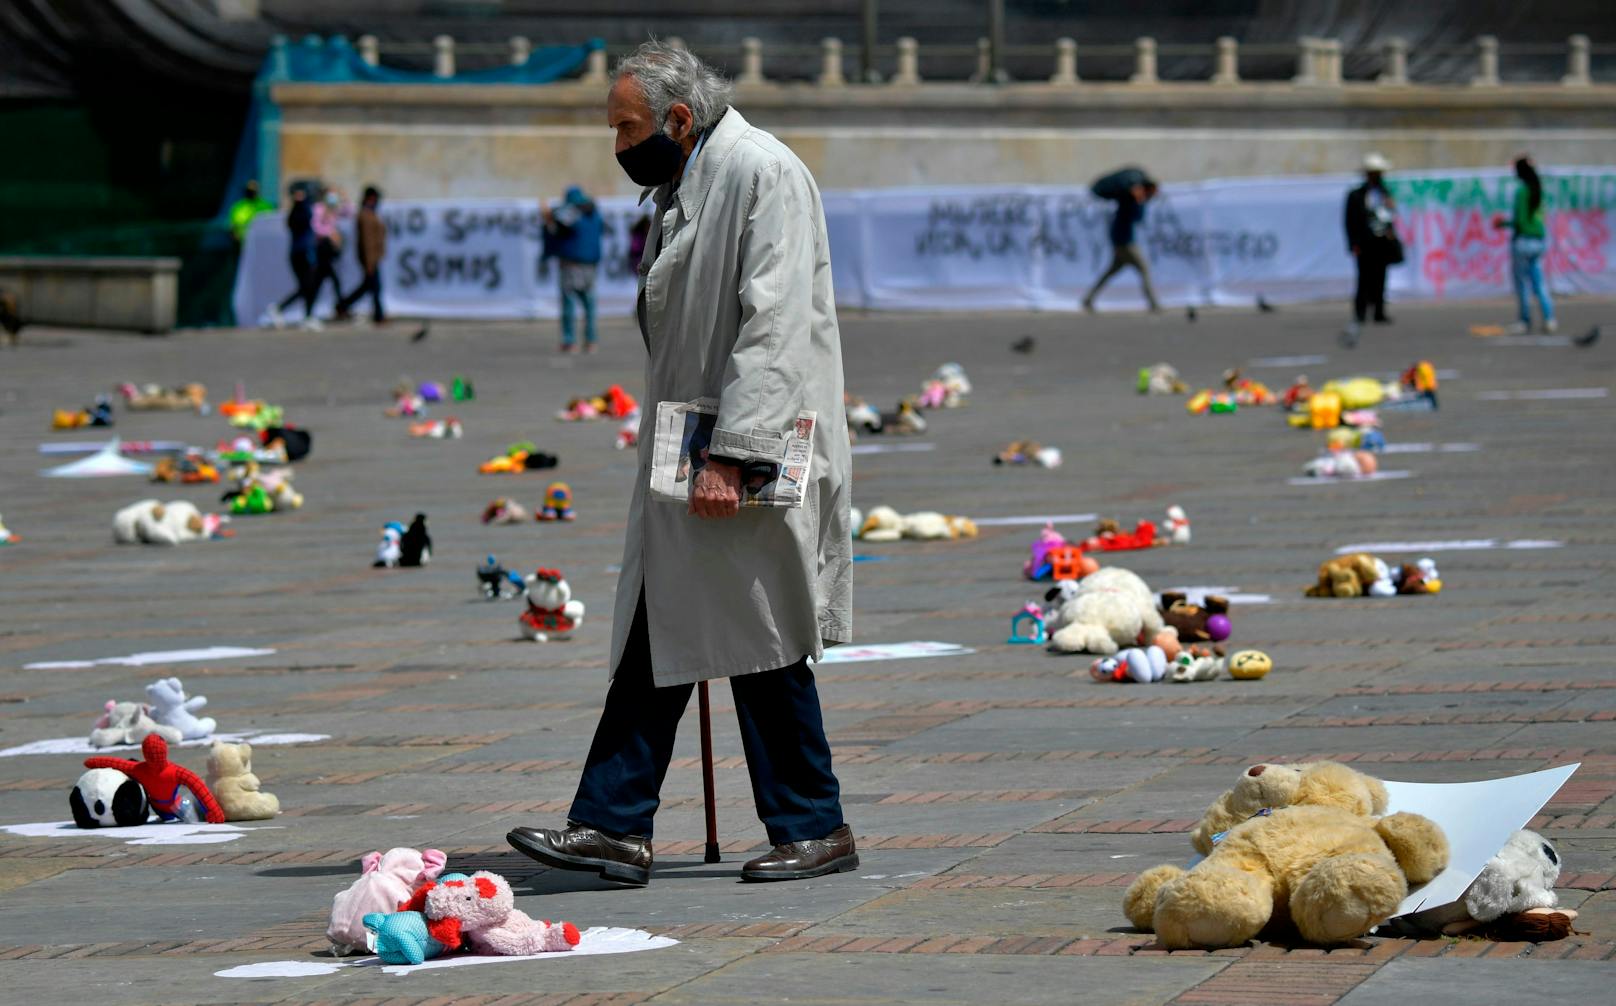 Eine symbolische Demonstration am Bolivar-Platz vor dem Parlament in Bogota. Etwa 1.000 Teddybären und Spielzeuge fordern Sanktionen gegen Kindesmissbrauch.<br>